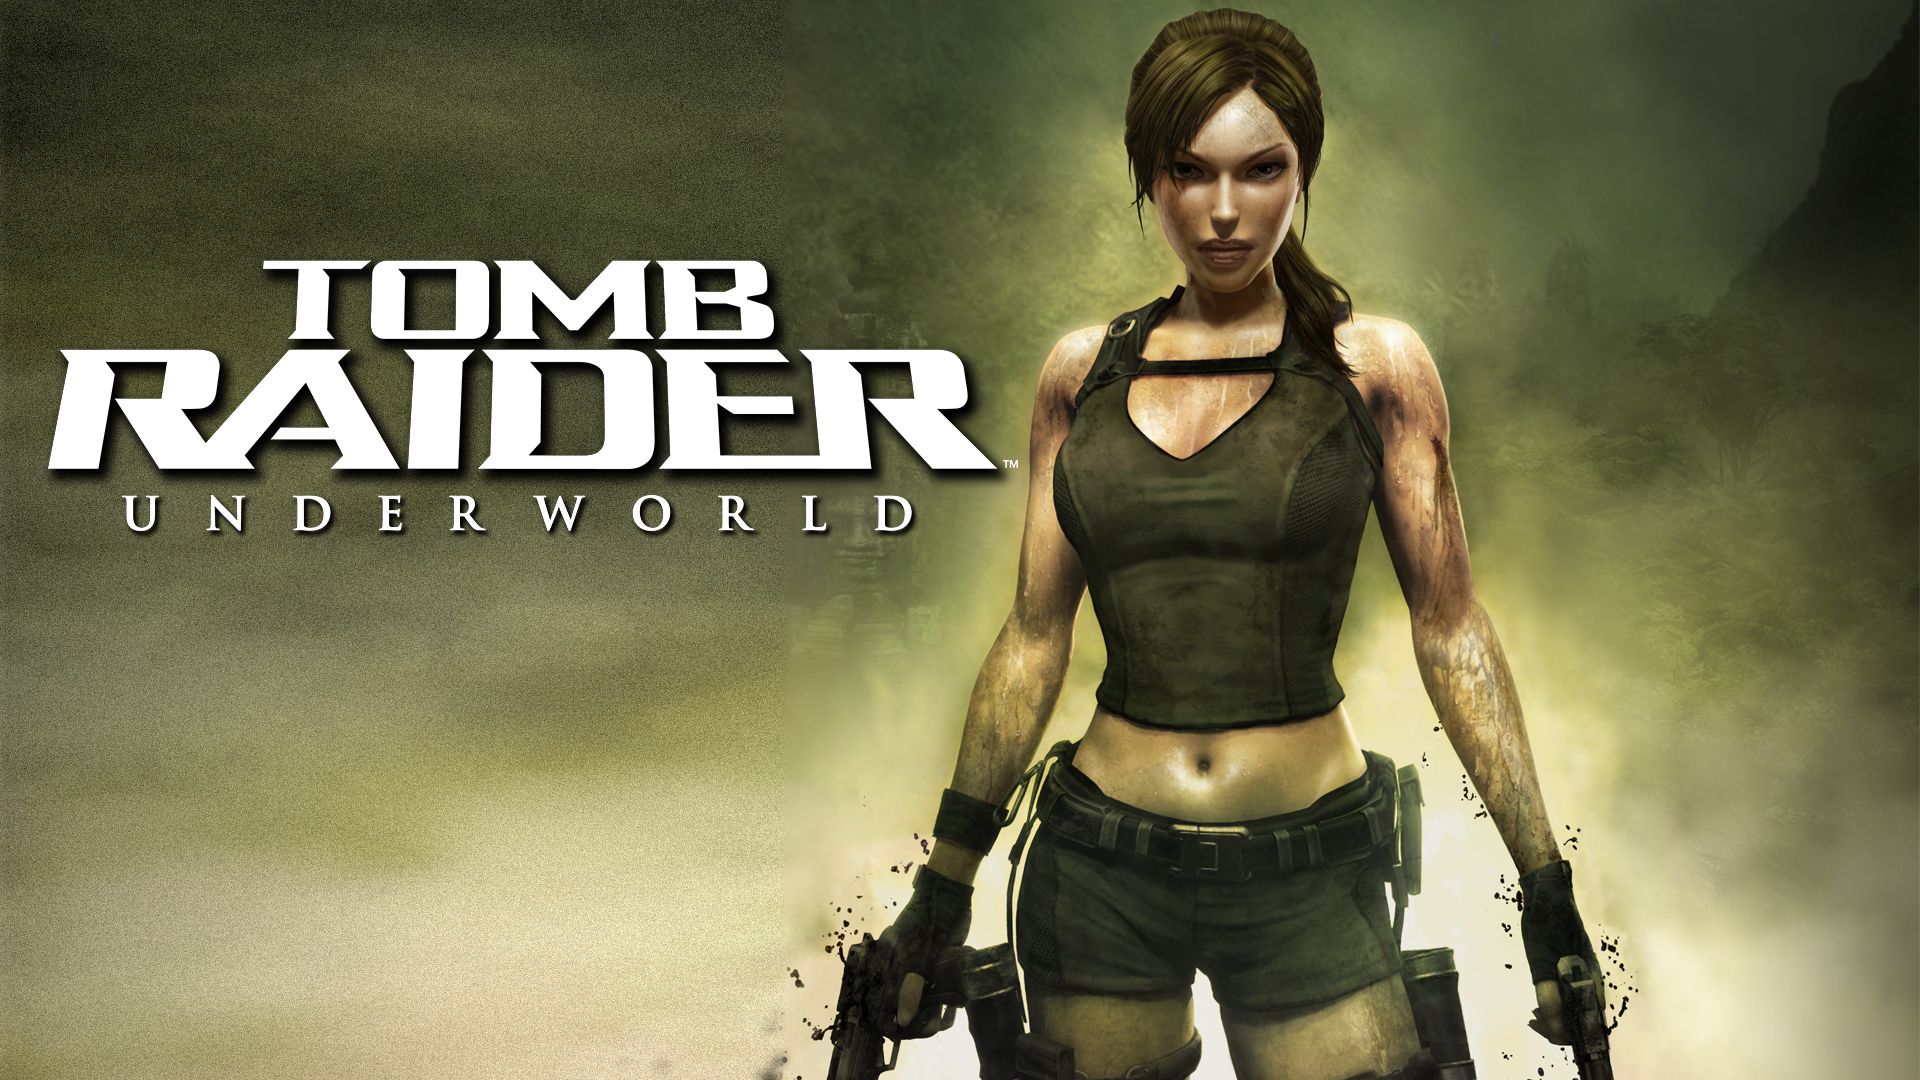 Прохождение игры Tomb Raider: Underworld # 2. HD - Full 1080p. (Русская версия игры)